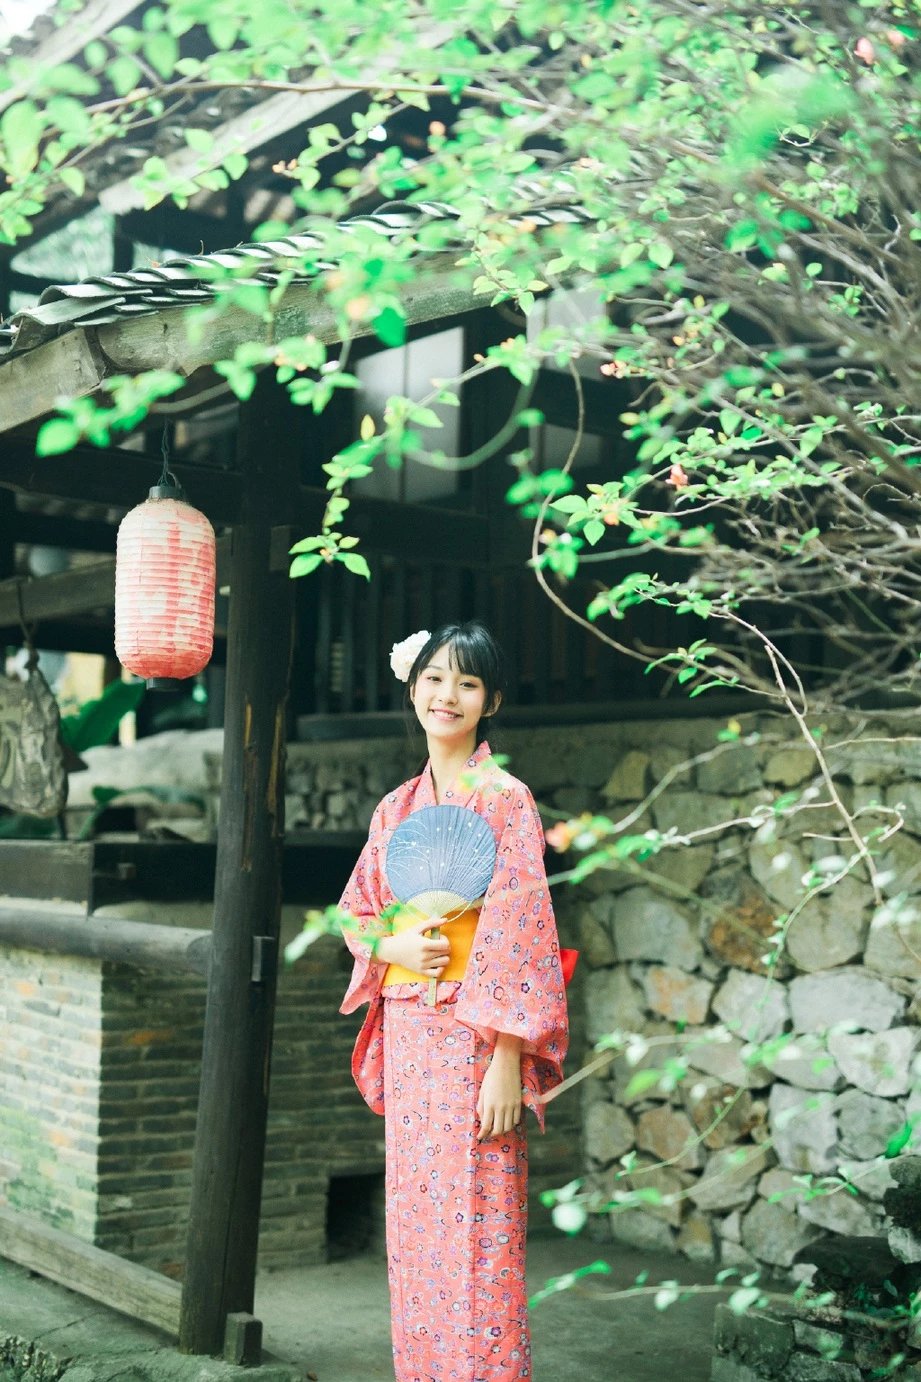 漂亮的日本古装和服美女甜美写真图片